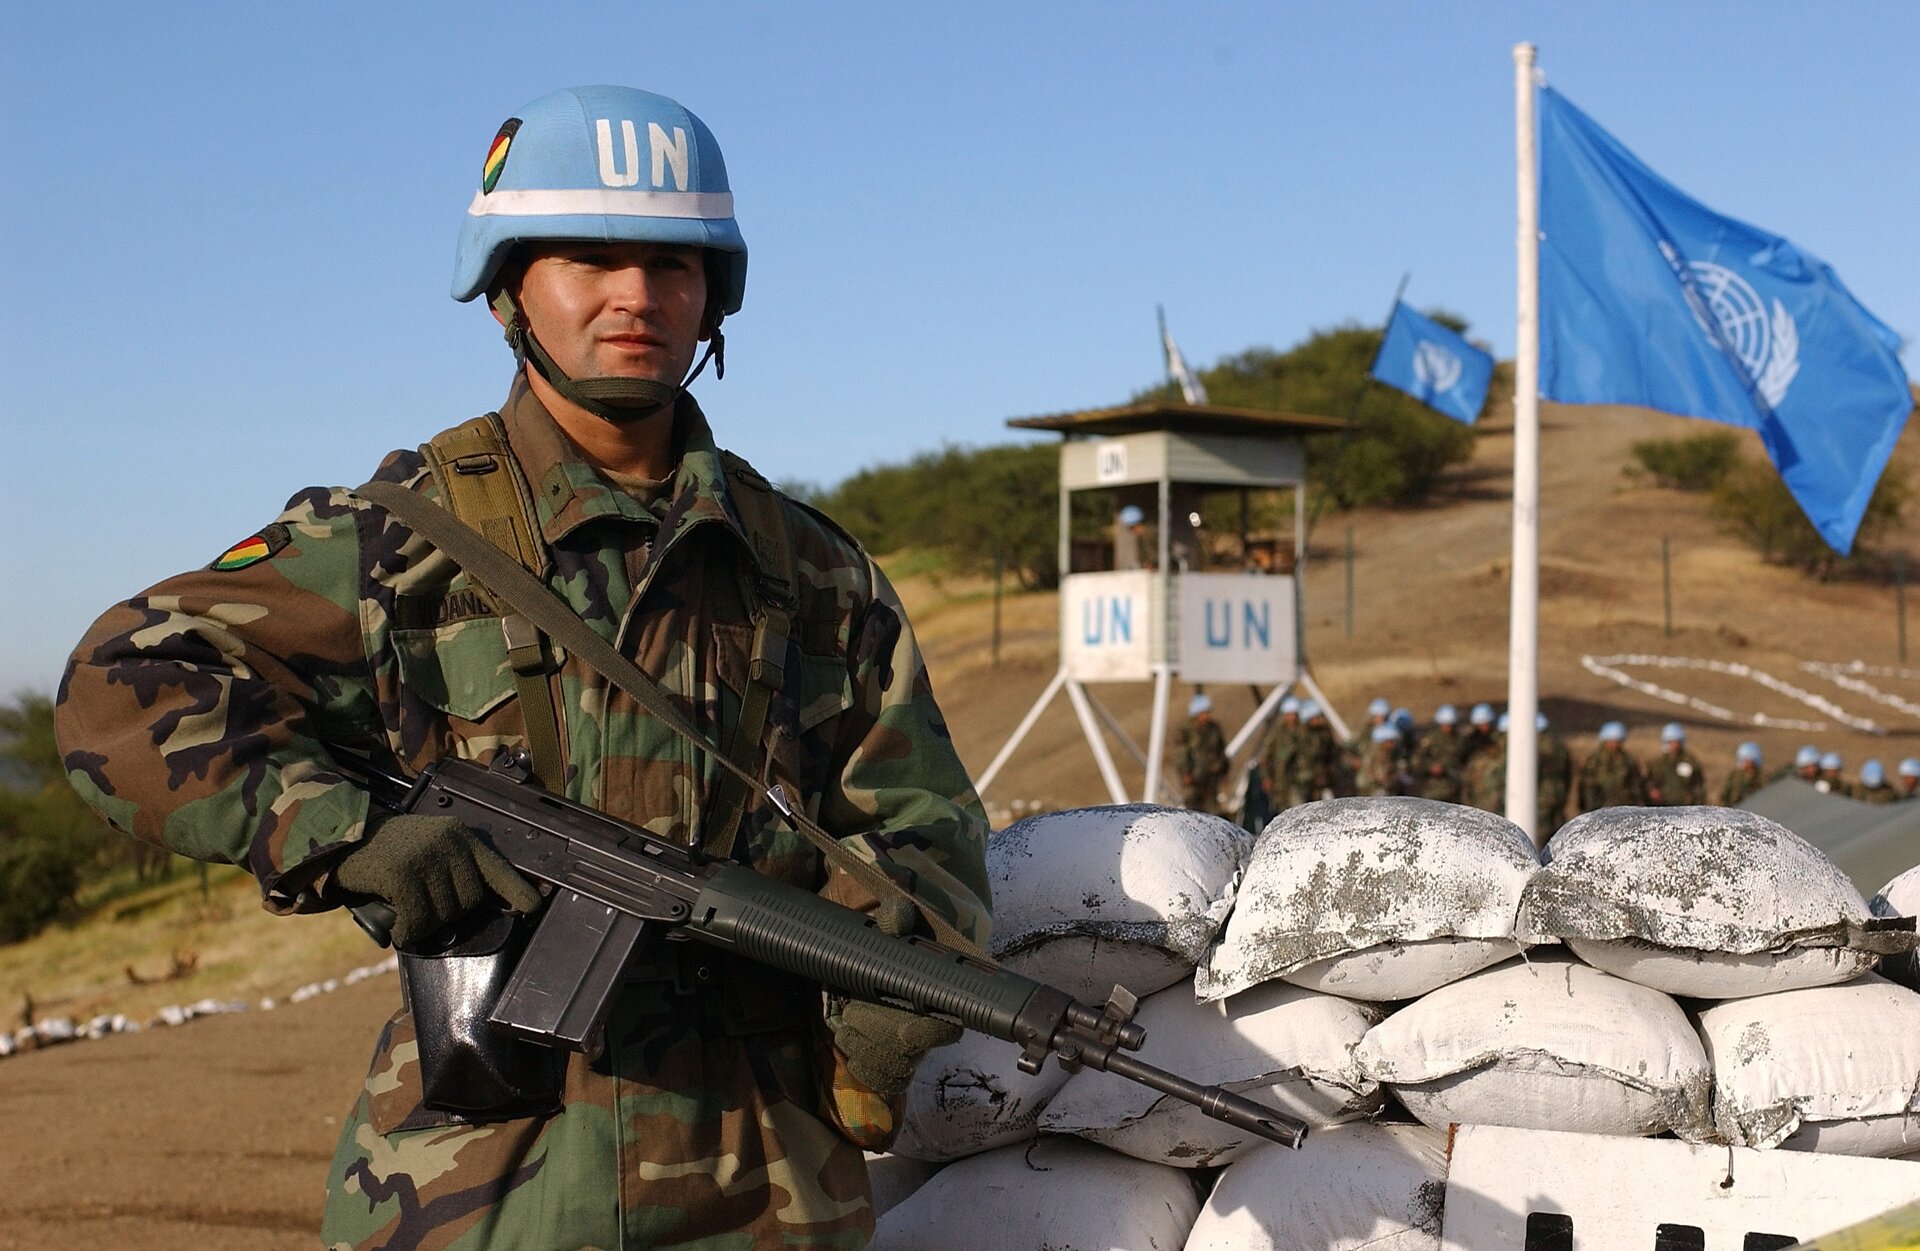 Ilustracja przedstawia: siły pokojowe ONZ ( niebieskie / błękitne berety, niebieskie / błękitne hełmy) – część sił zbrojnych państw oddanych do dyspozycji ONZ w celu przeprowadzenia konkretnych operacji pokojowych, na błękitnym hełmie żołnierza jest napis UN (ang. United Nations). Widoczne  błękitne flagi w strażnicy wojskowej. Żołnierz w umundurowaniu wojskowym z karabinem. Widoczne poukładane worki.